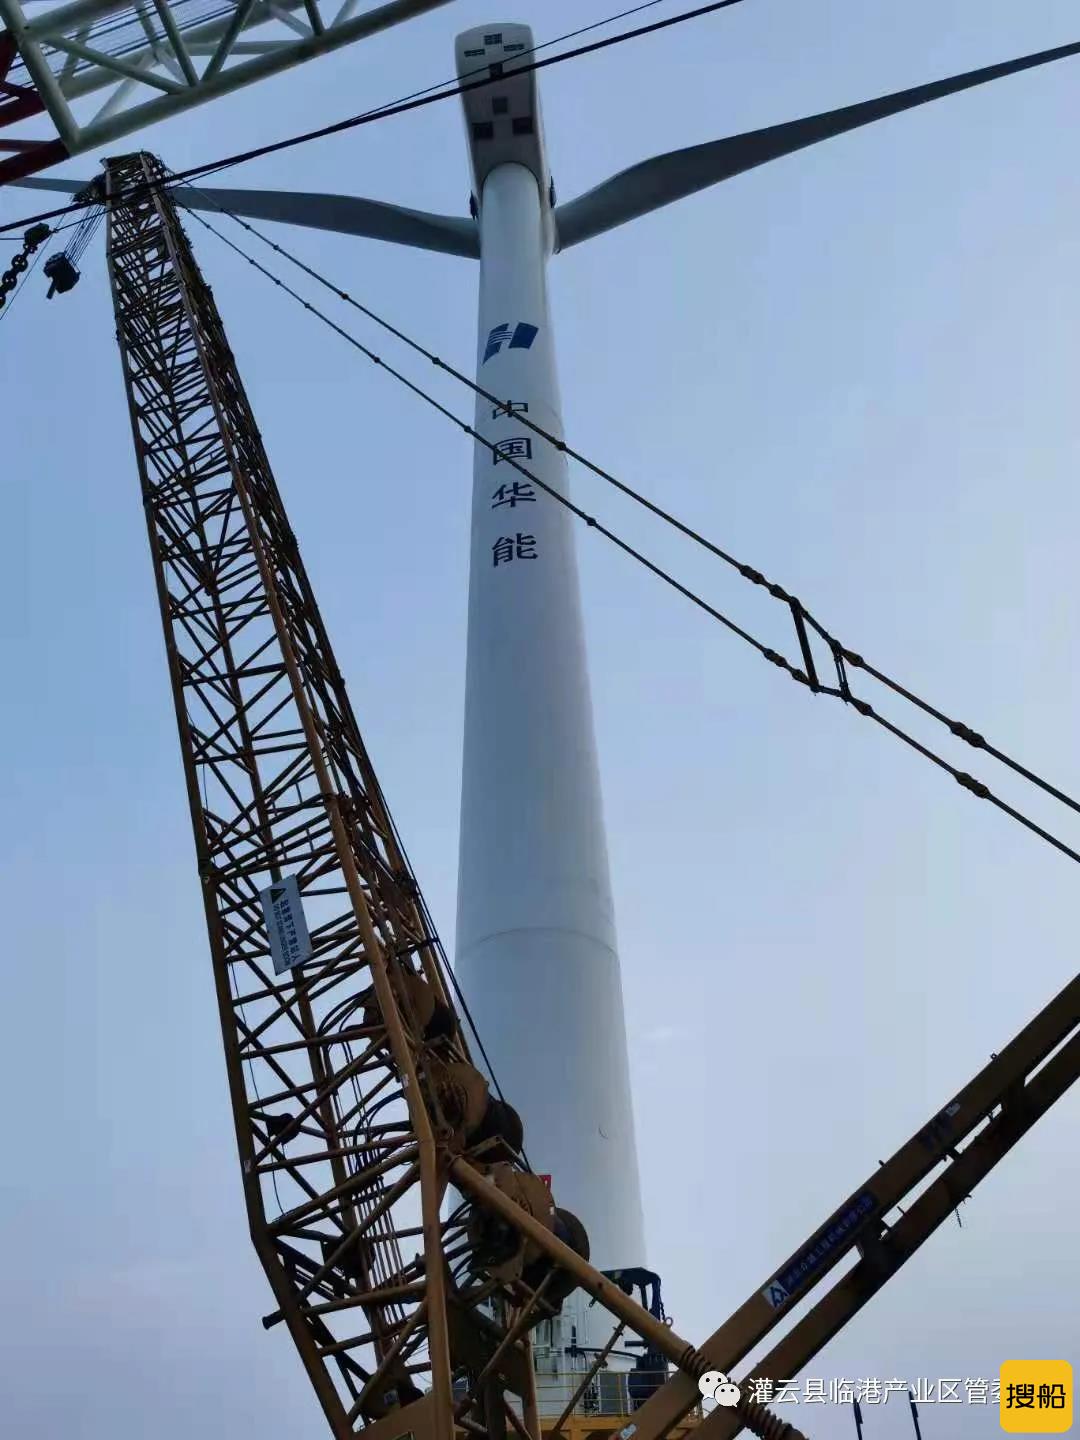 华能灌云海上风电项目48台风机全部完成吊装